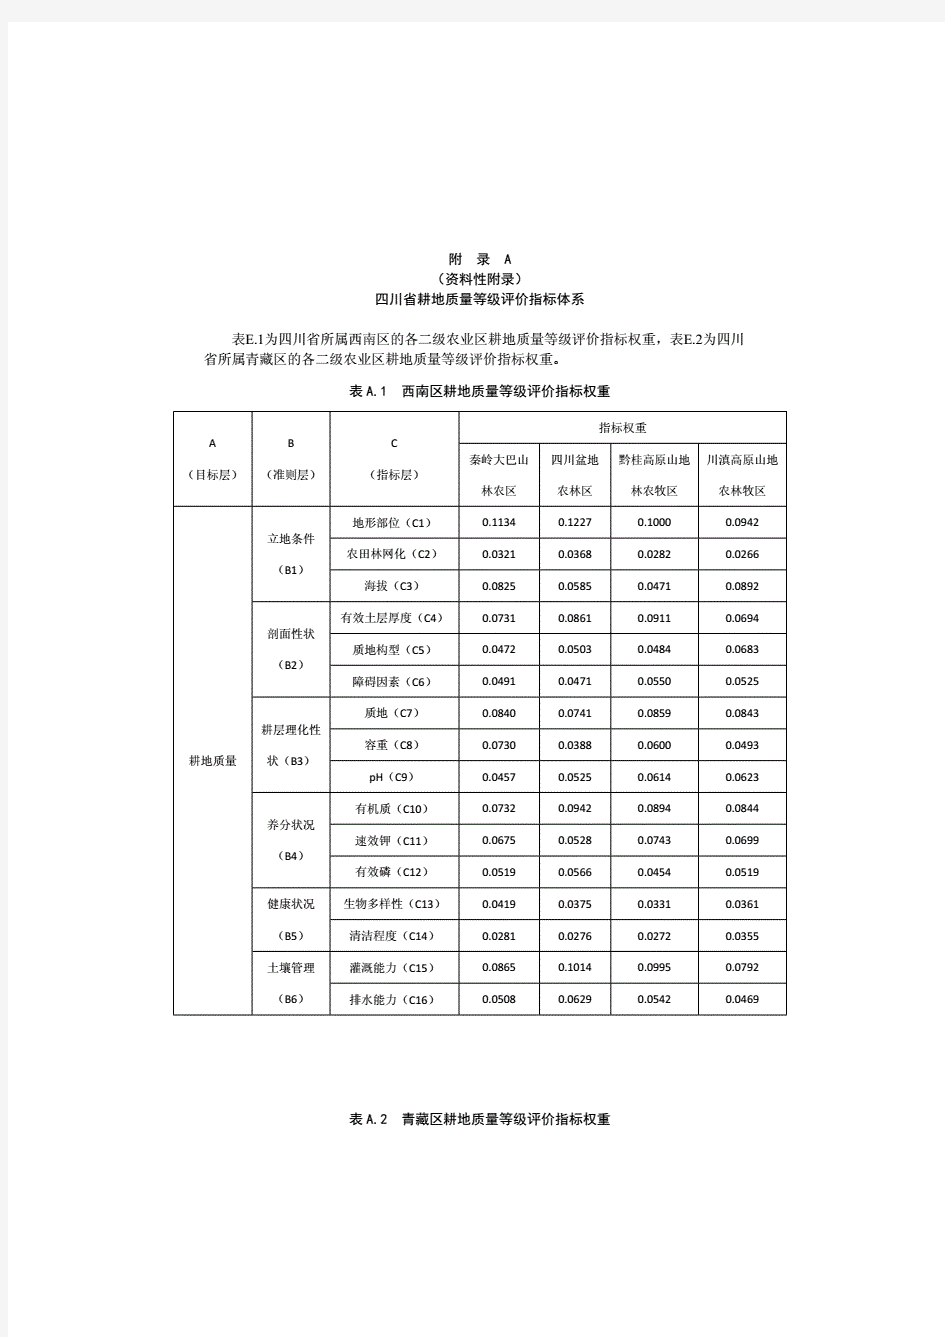 四川省耕地质量等级评价指标体系、隶属度、划分标准.